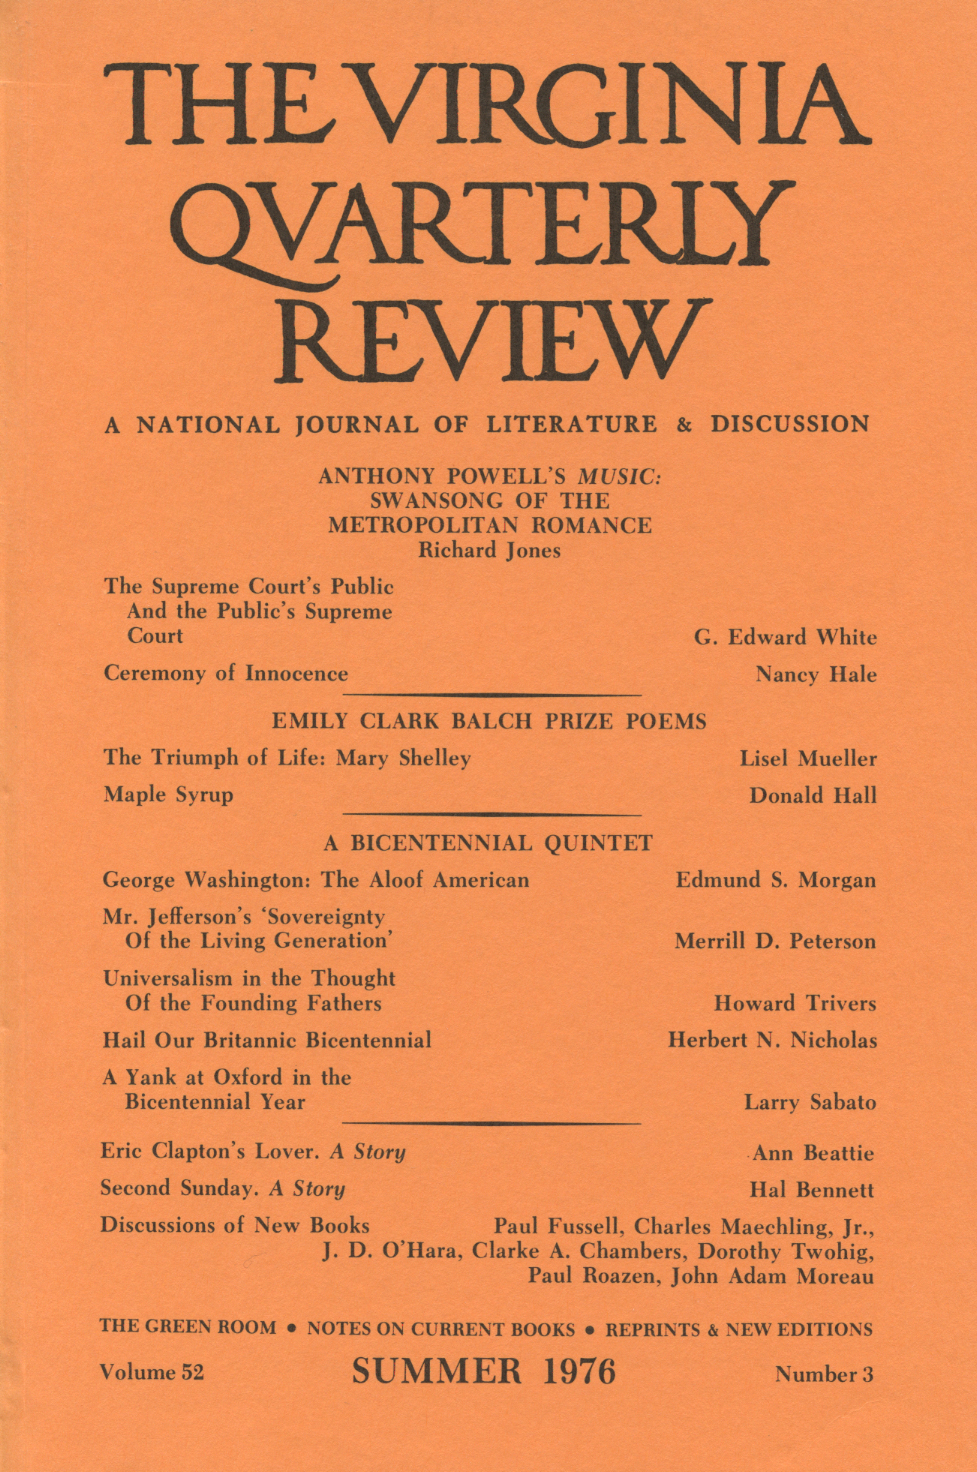 Virginia Quarterly Review, Spring 1976 cover